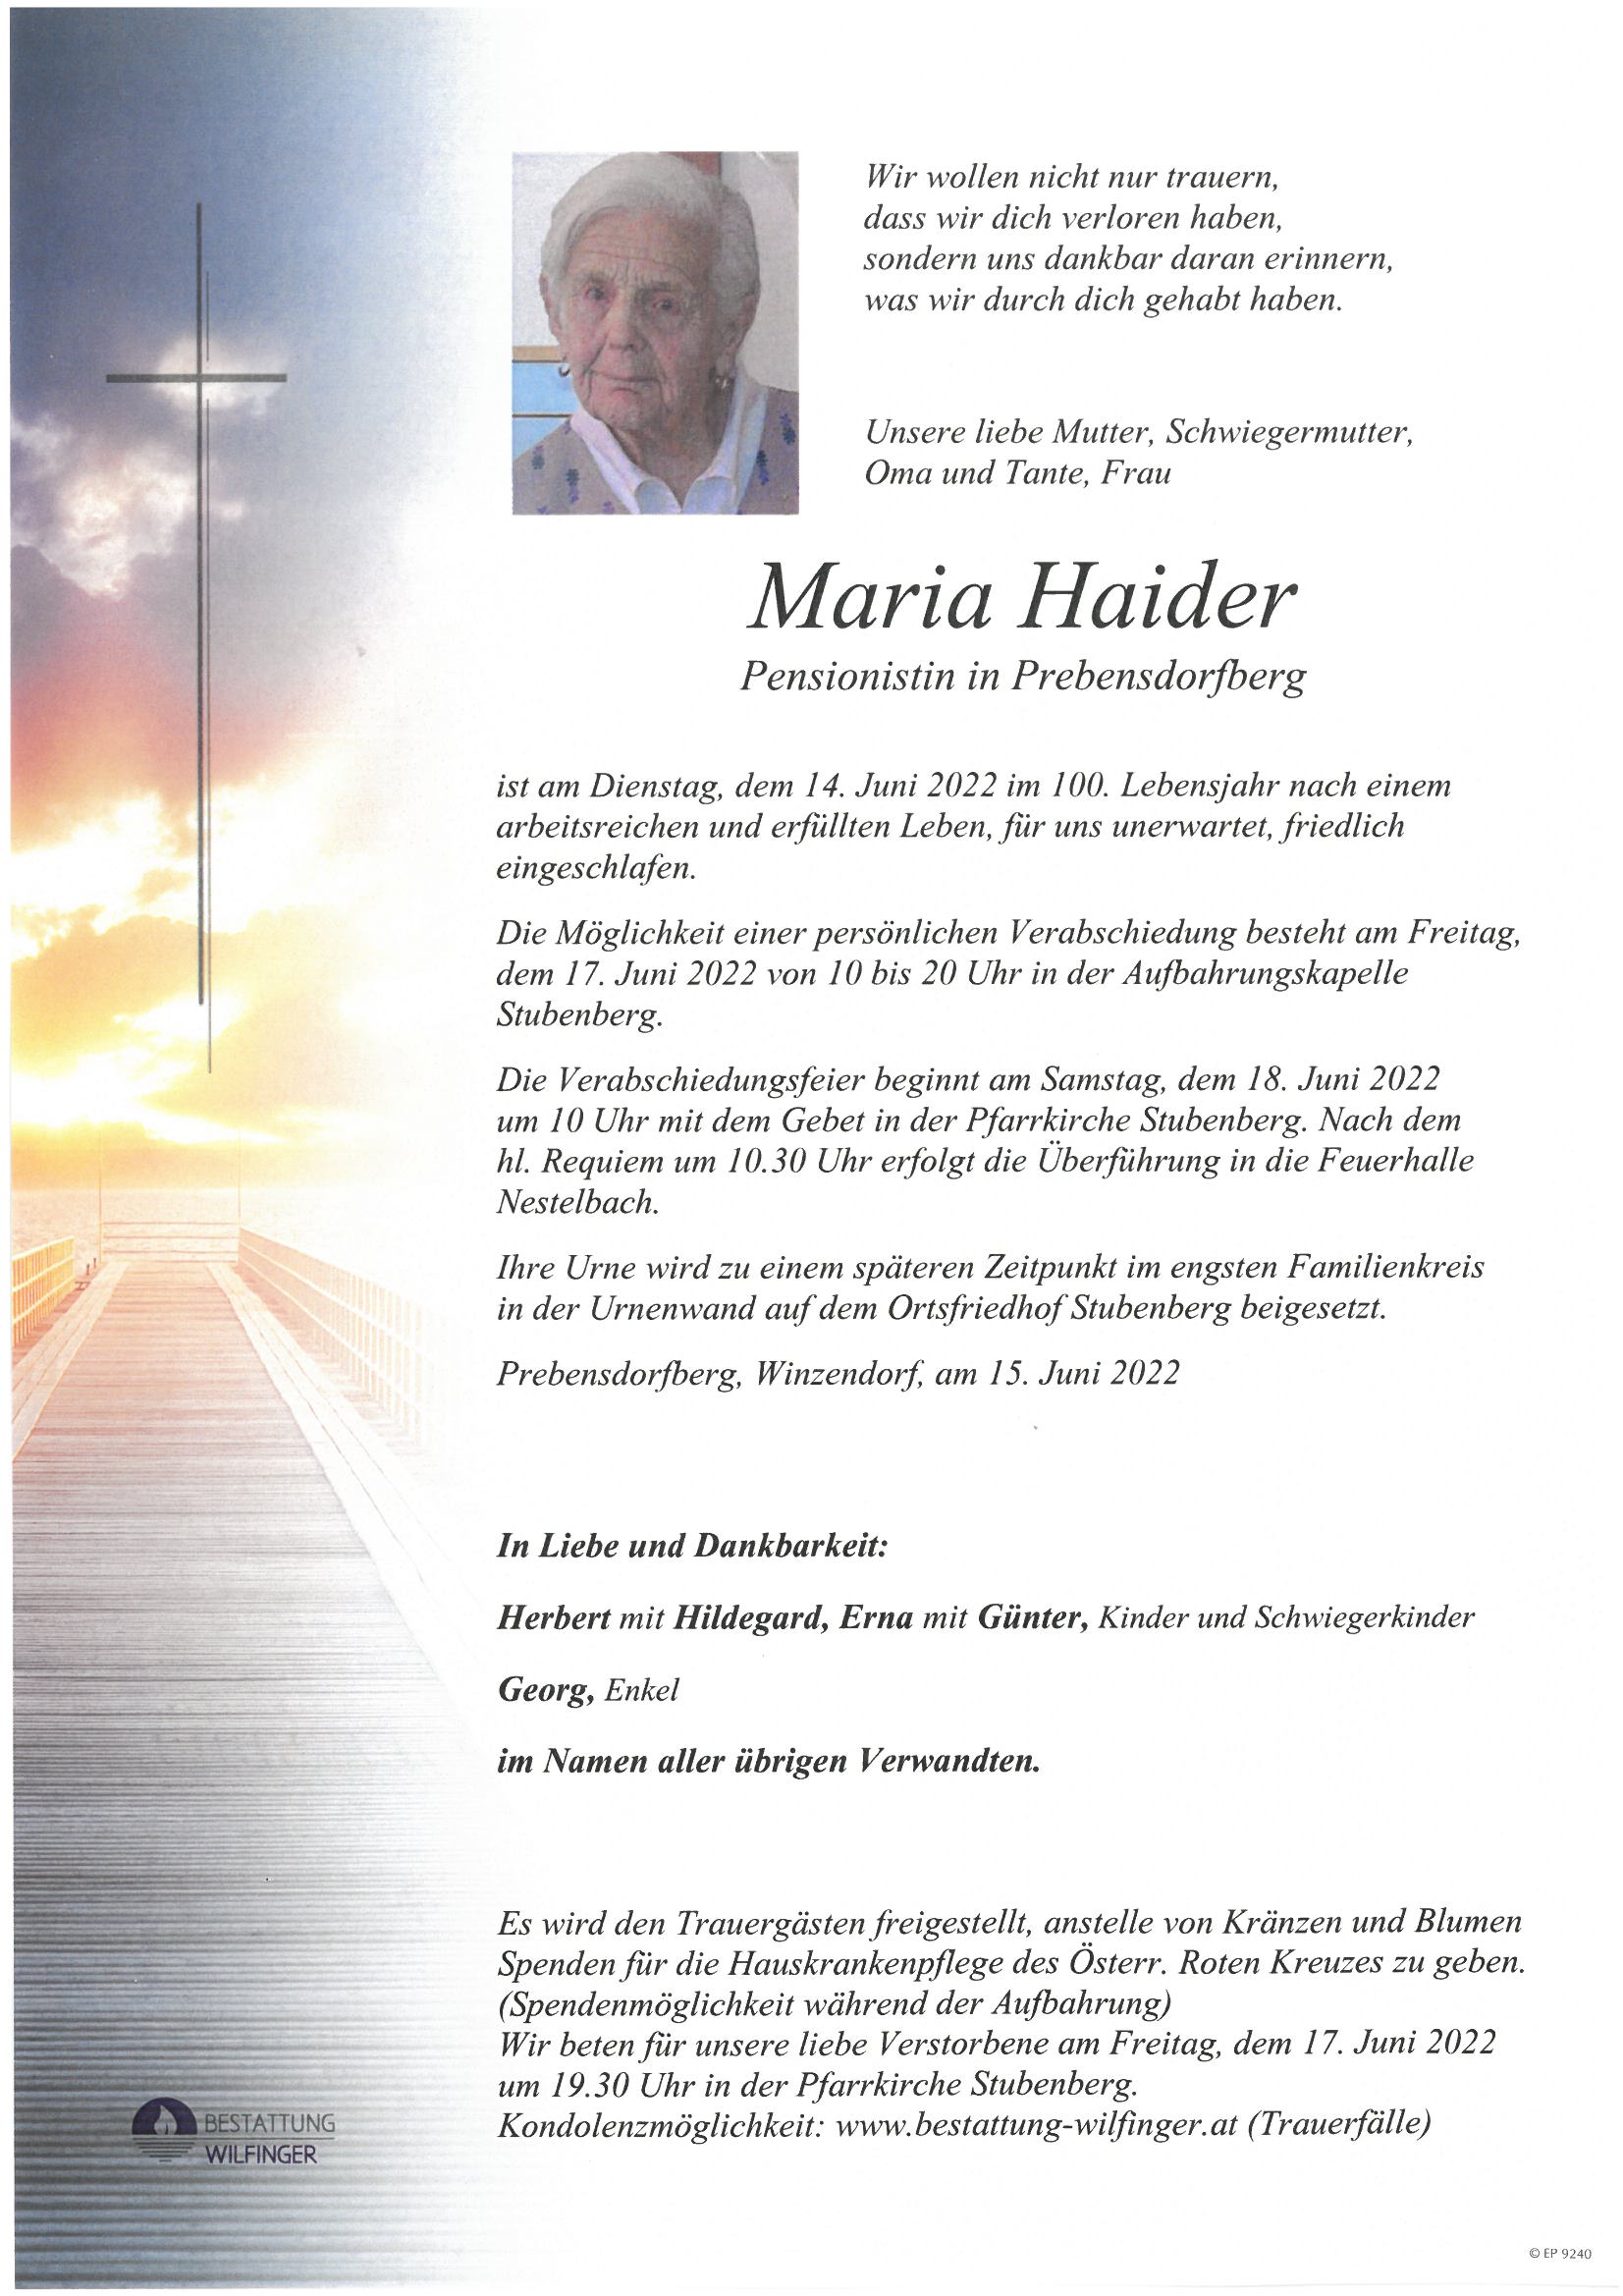 Maria Haider, Prebensdorfberg